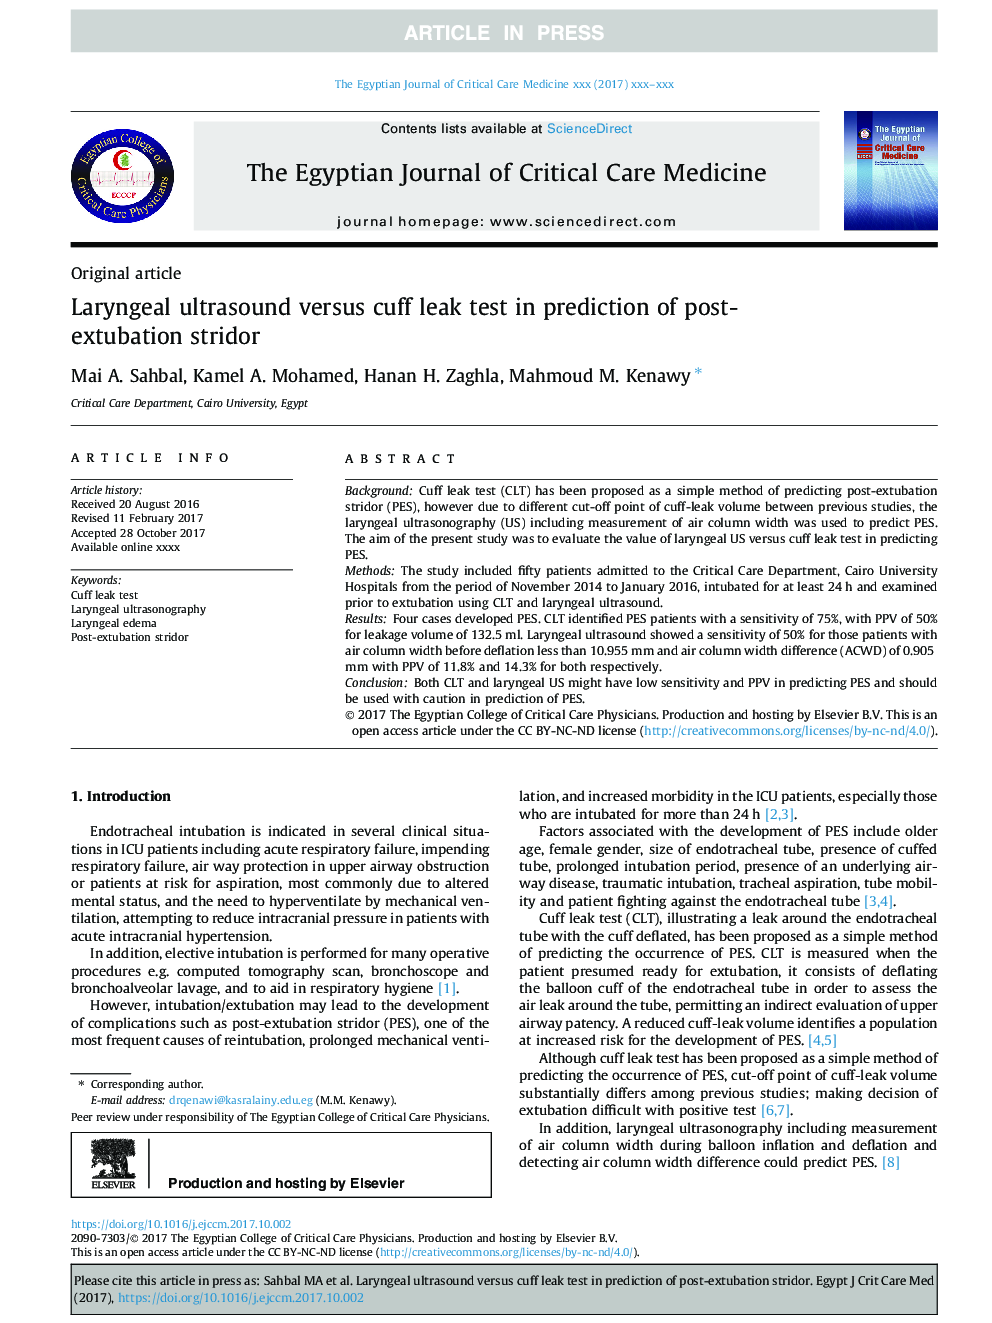 Laryngeal ultrasound versus cuff leak test in prediction of post-extubation stridor